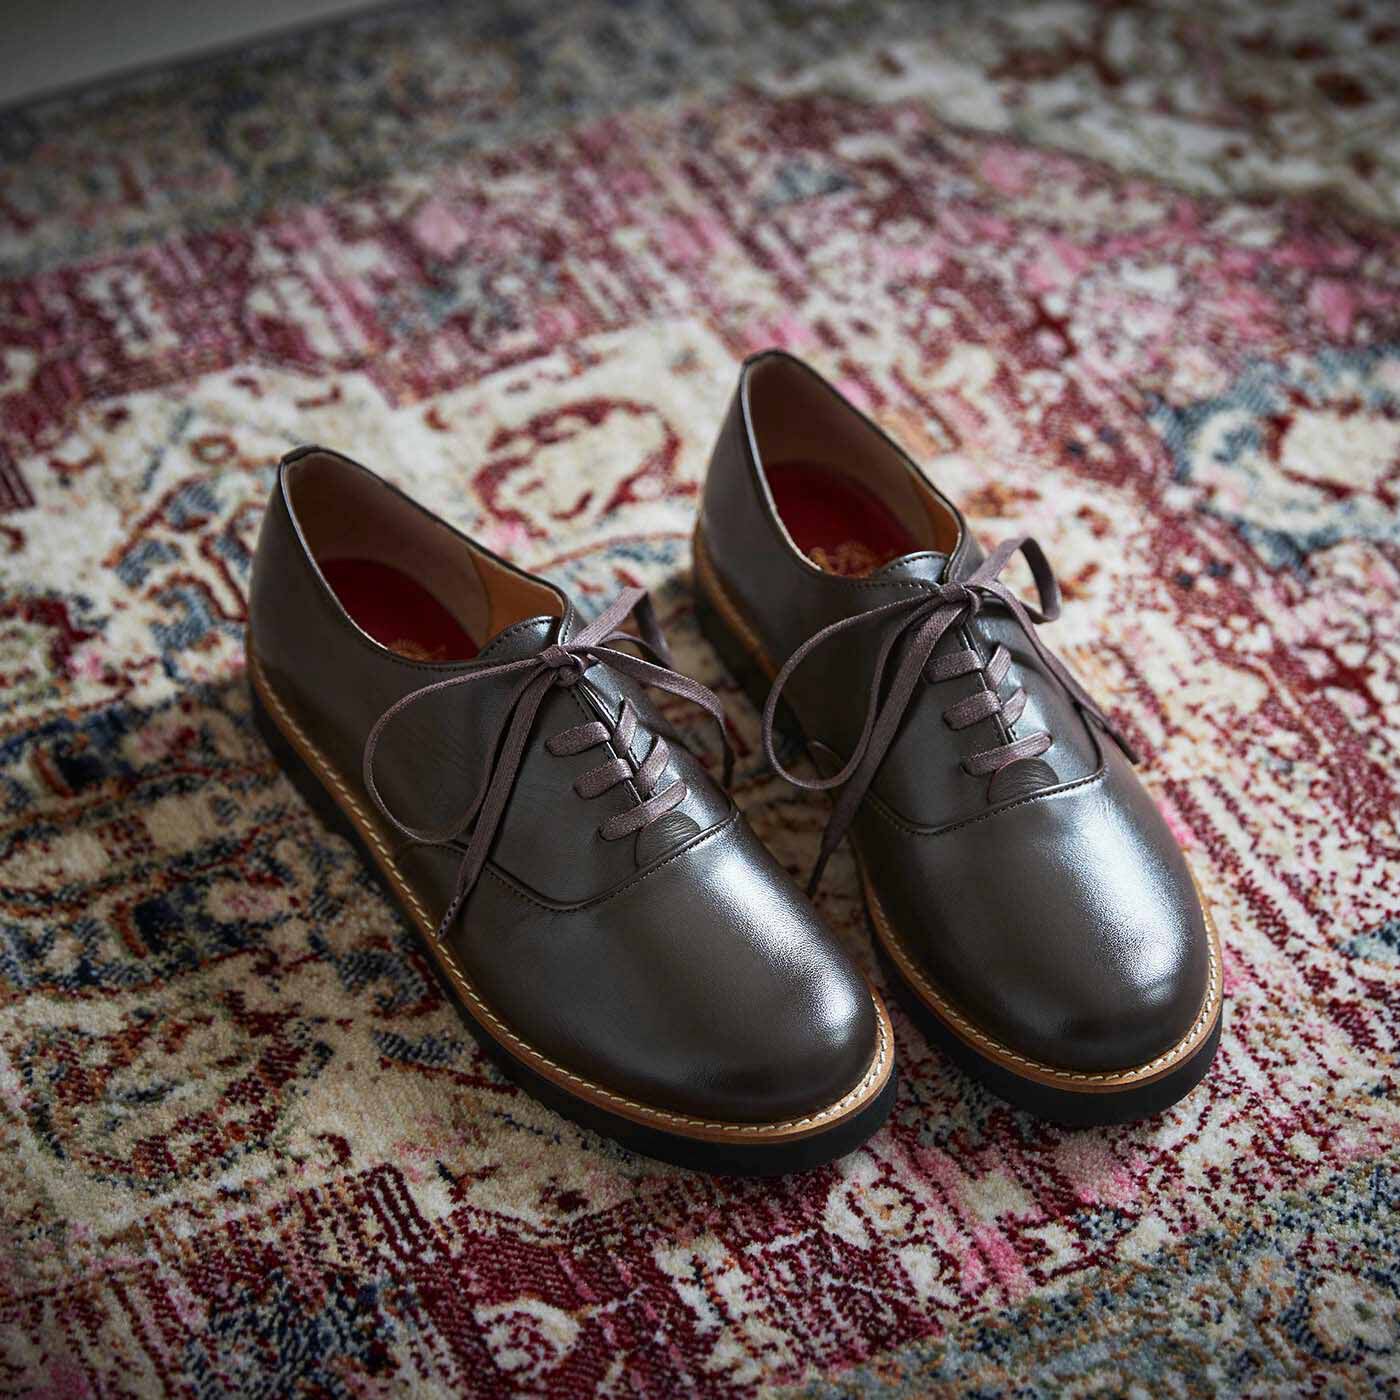 ＆Stories|長田の靴職人が作った 職人本革のポストマンシューズ〈ダークブラウン〉|郵便配達員の人が履いていた、丈夫で歩きやすいシューズを参考に長田の靴職人が作り上げたポストマンシューズの3代目モデル。